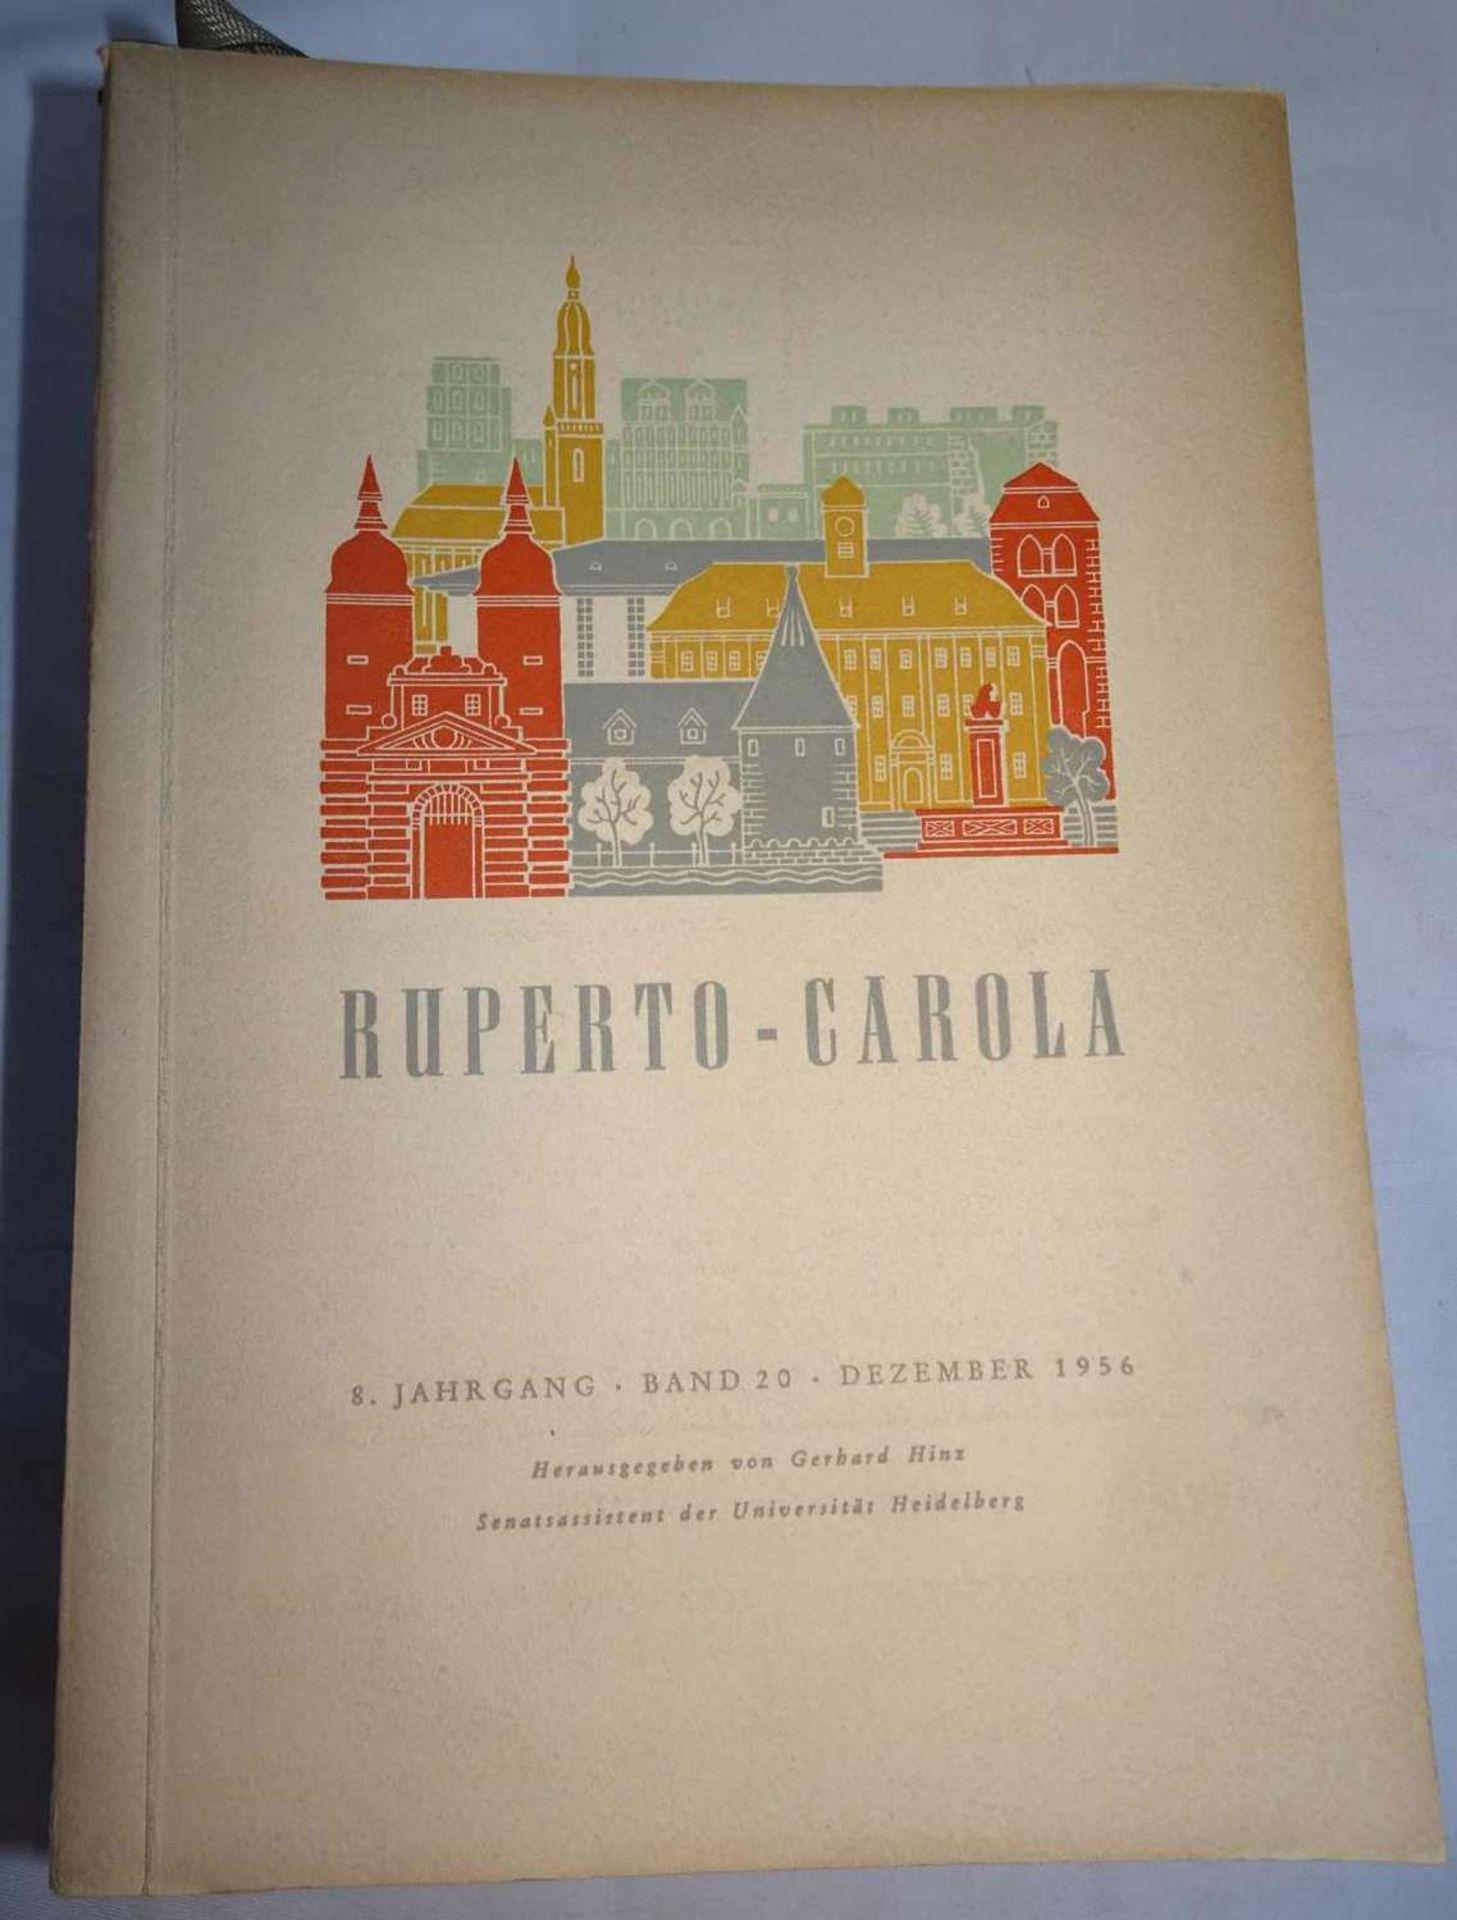 Ruperto-Carola, herausgegeben von Gerhard Hinz, verschiedene Bänder & Jahrgänge von 1956-1970. - Bild 2 aus 2